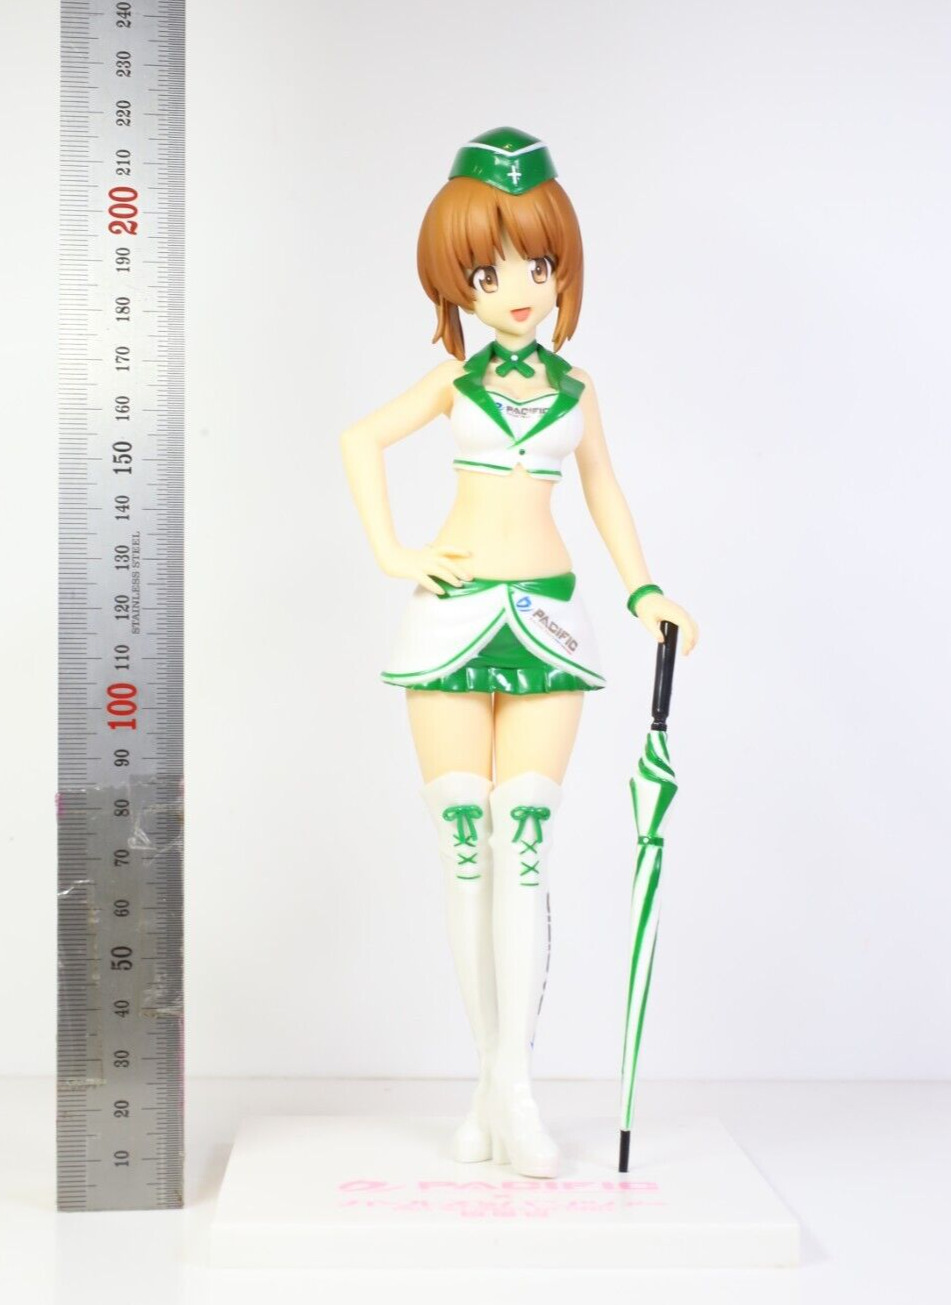 GIRLS und PANZER Miho Nishizumi Anime Figure Pacific SEGA Prize 22cm 8.7inch